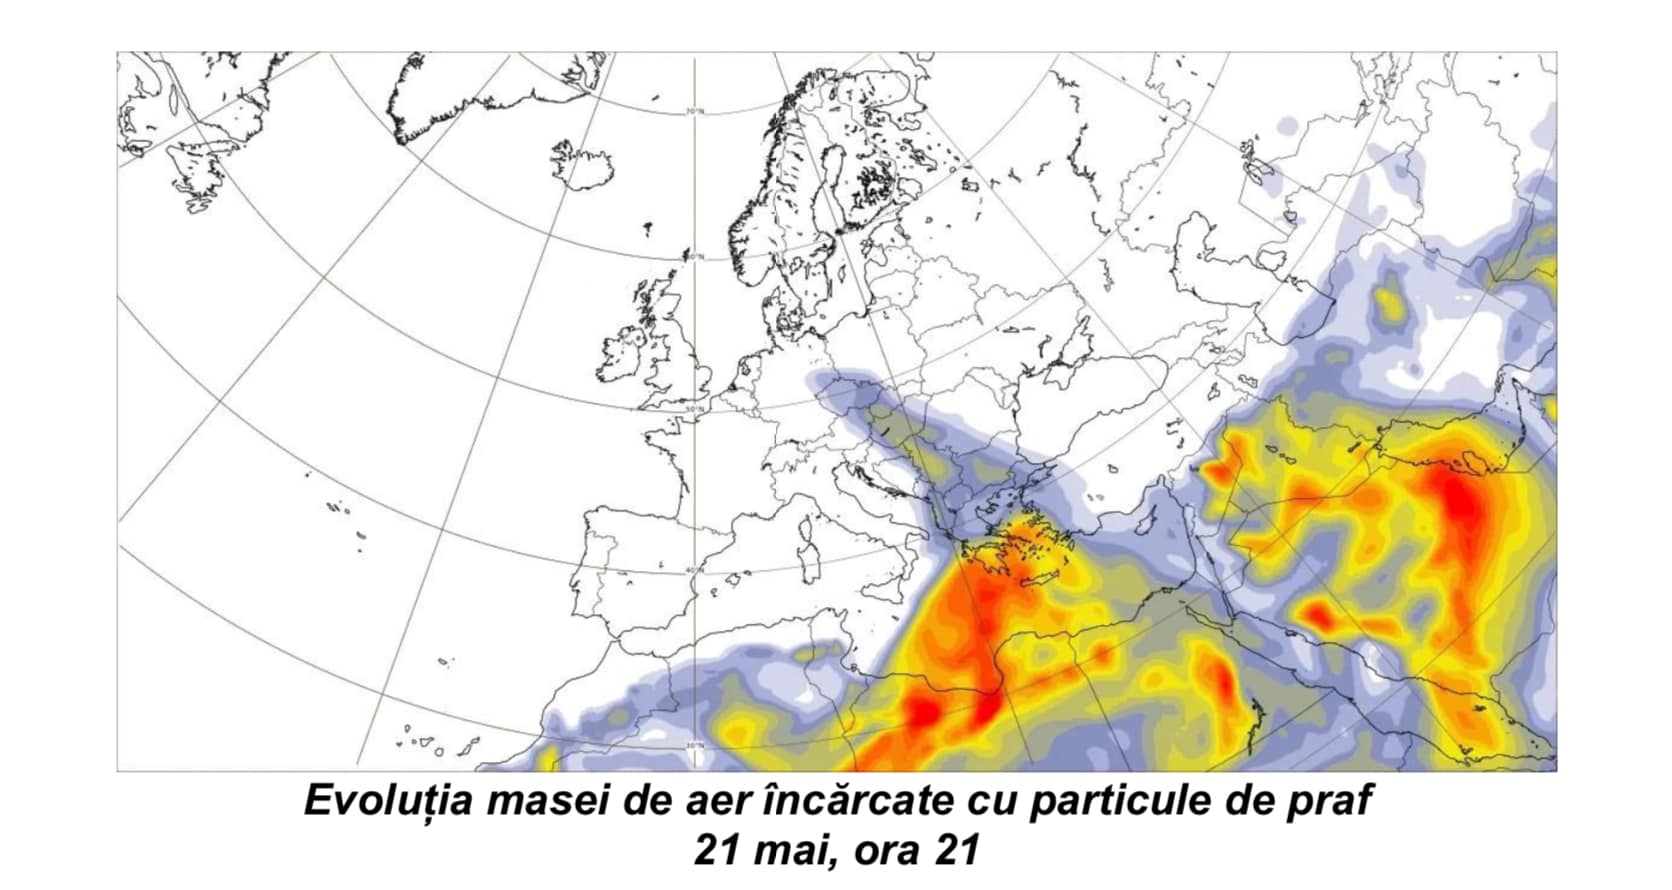 Молдову снова накроет облако пыли из Сахары? Что говорят метеорологи